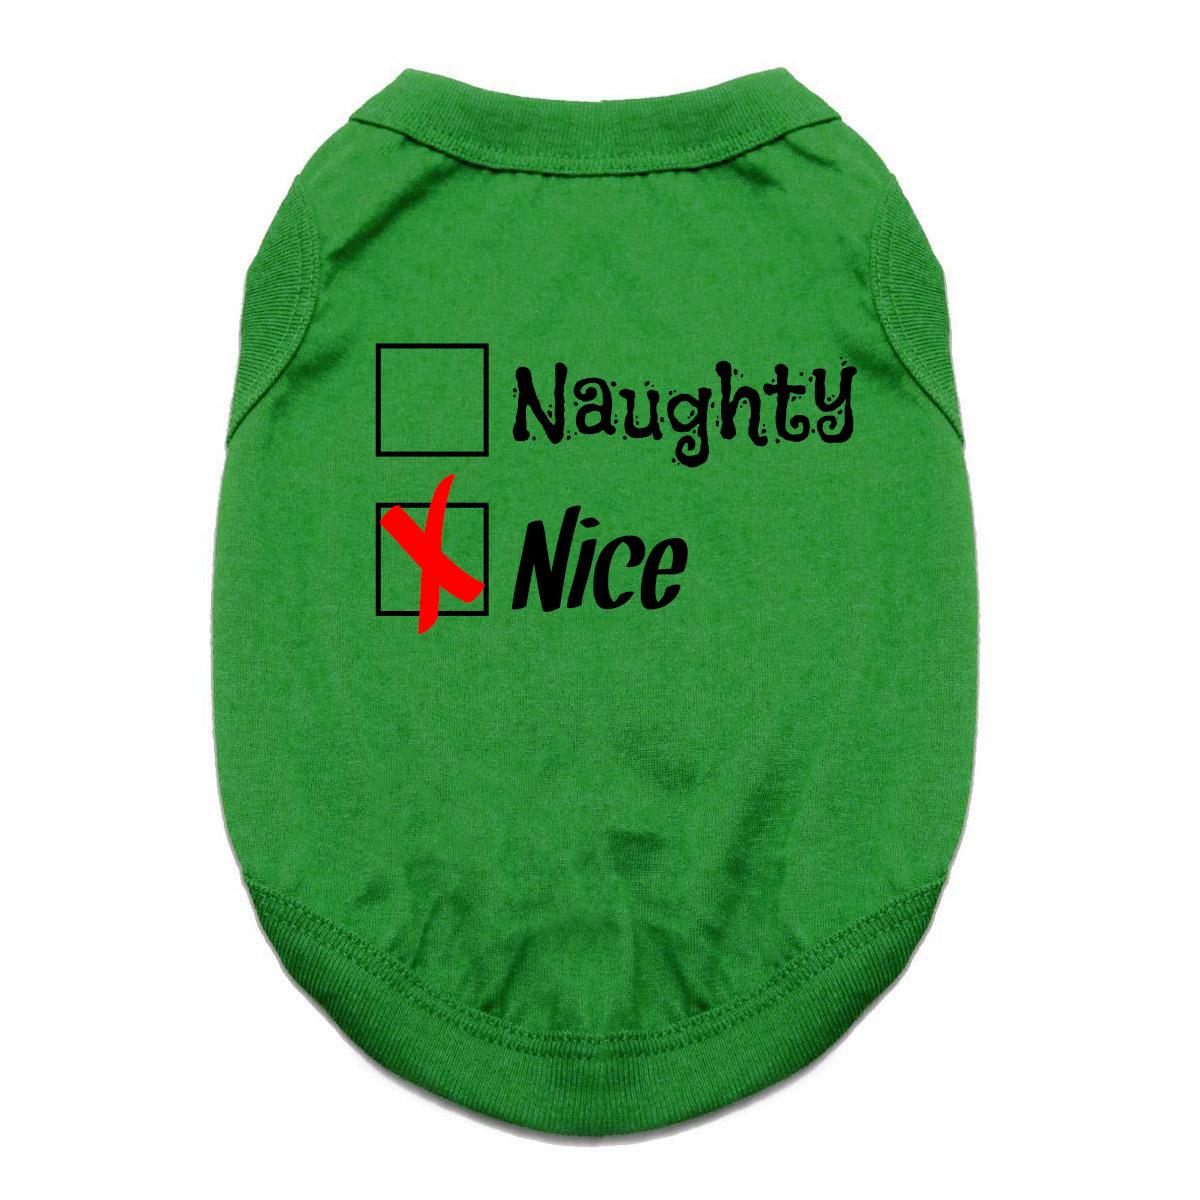 Naughty or Nice Dog Shirt - Nice Green